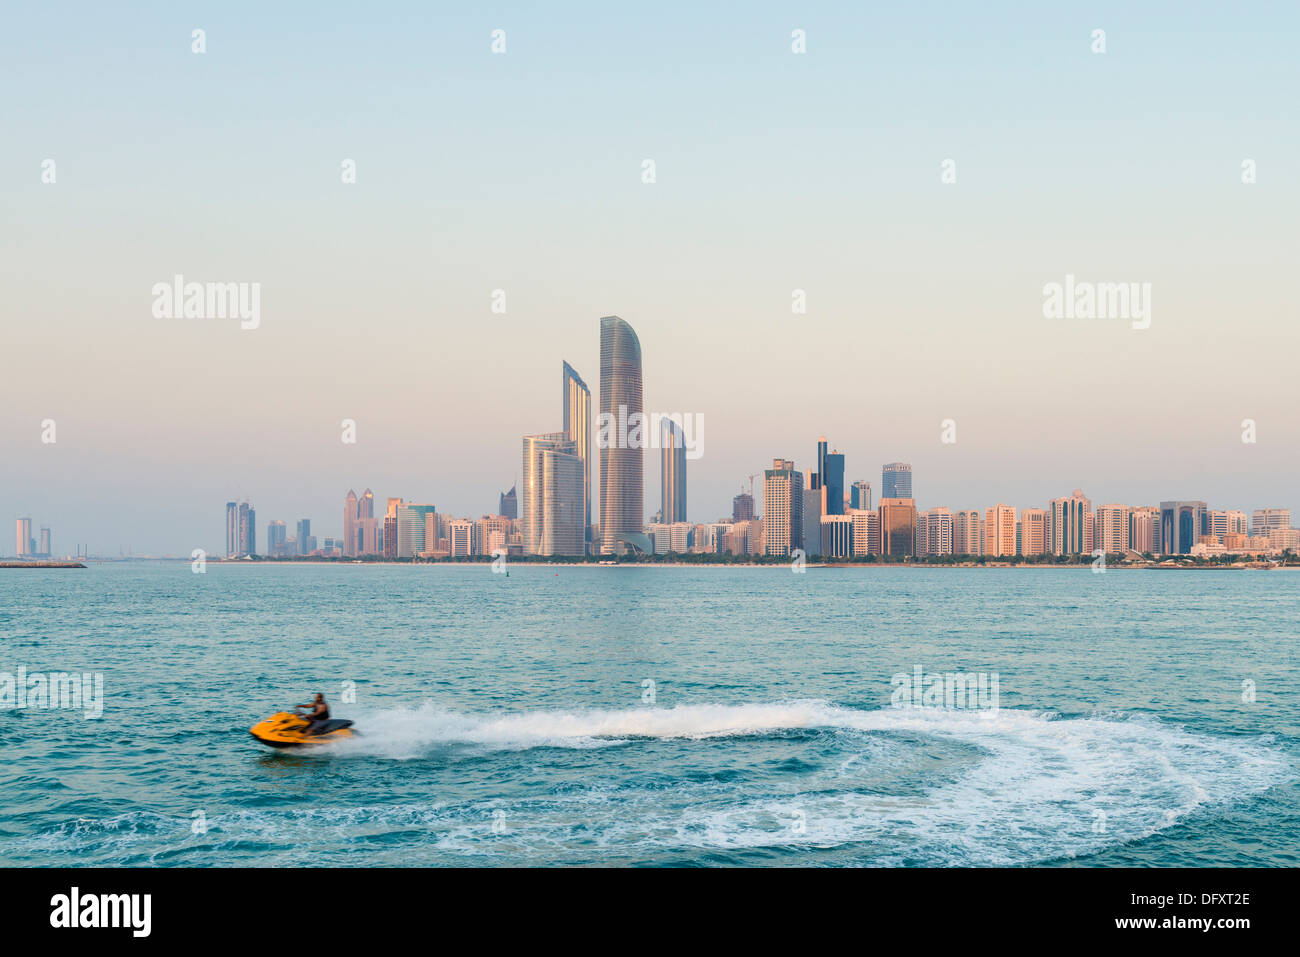 Skyline of Abu Dhabi in United Arab Emirates UAE Stock Photo